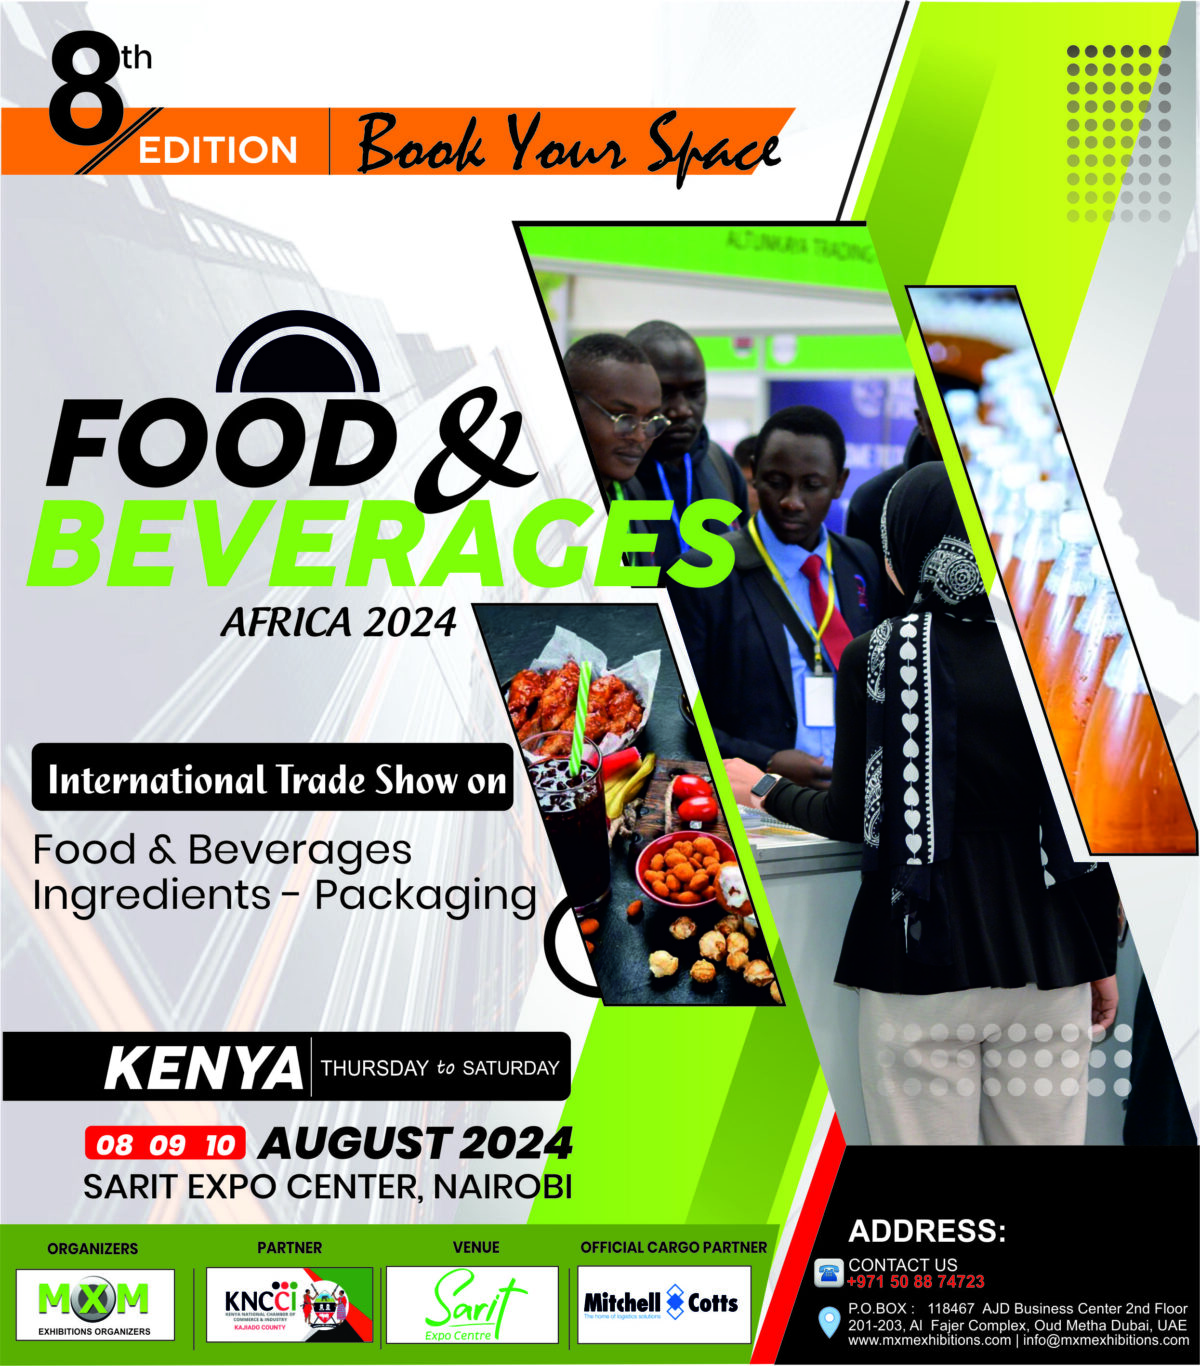 Foodbeverages-kenya-ad-2024-1200x1366.jpg